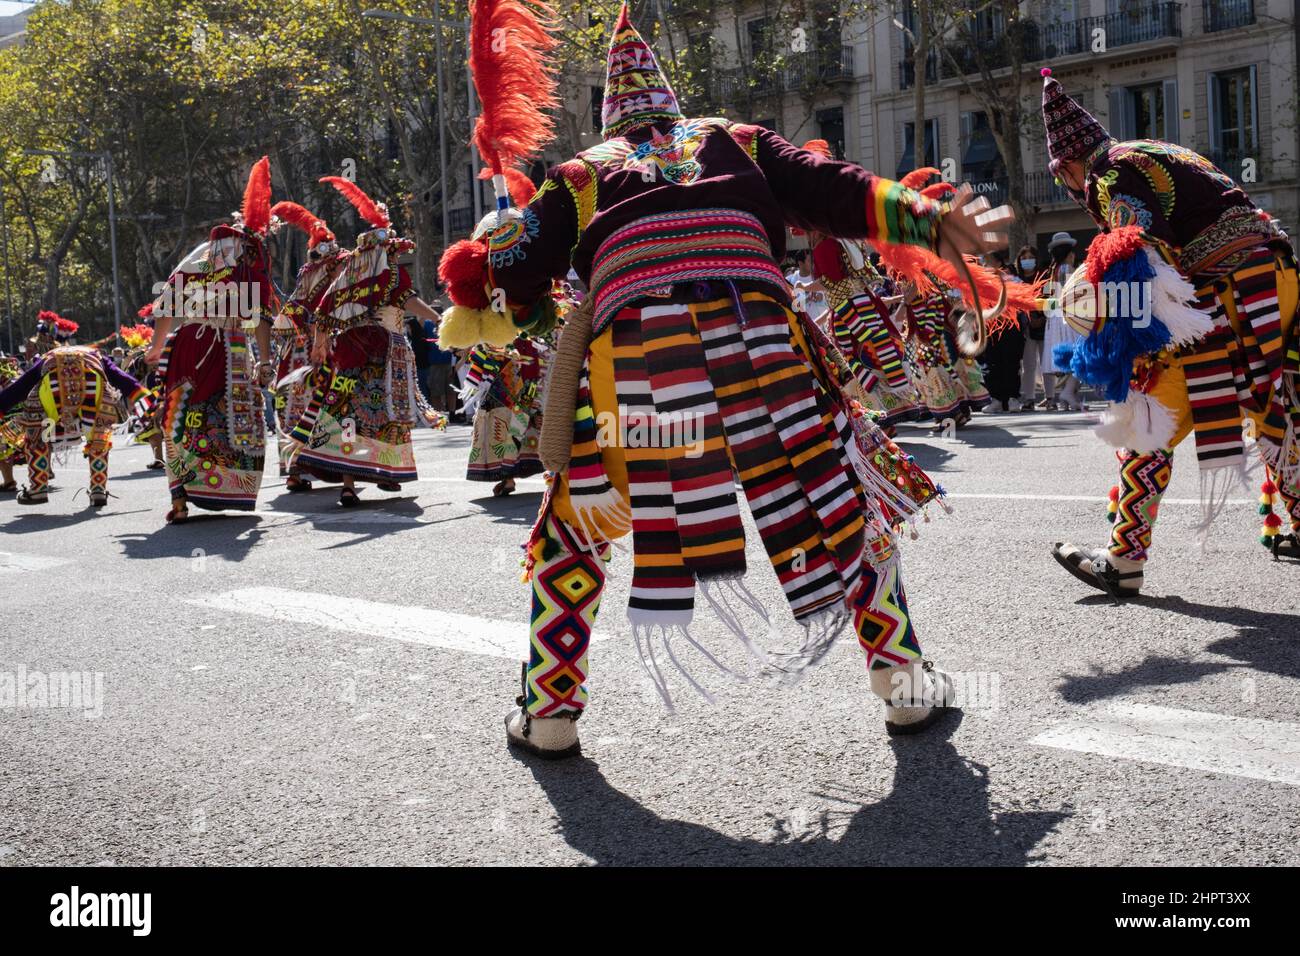 Les danseurs boliviens en costume traditionnel exécutent la danse folklorique pendant Dia de la Hispanidad (Journée du patrimoine hispanique) à Barcelone, Espagne. Banque D'Images